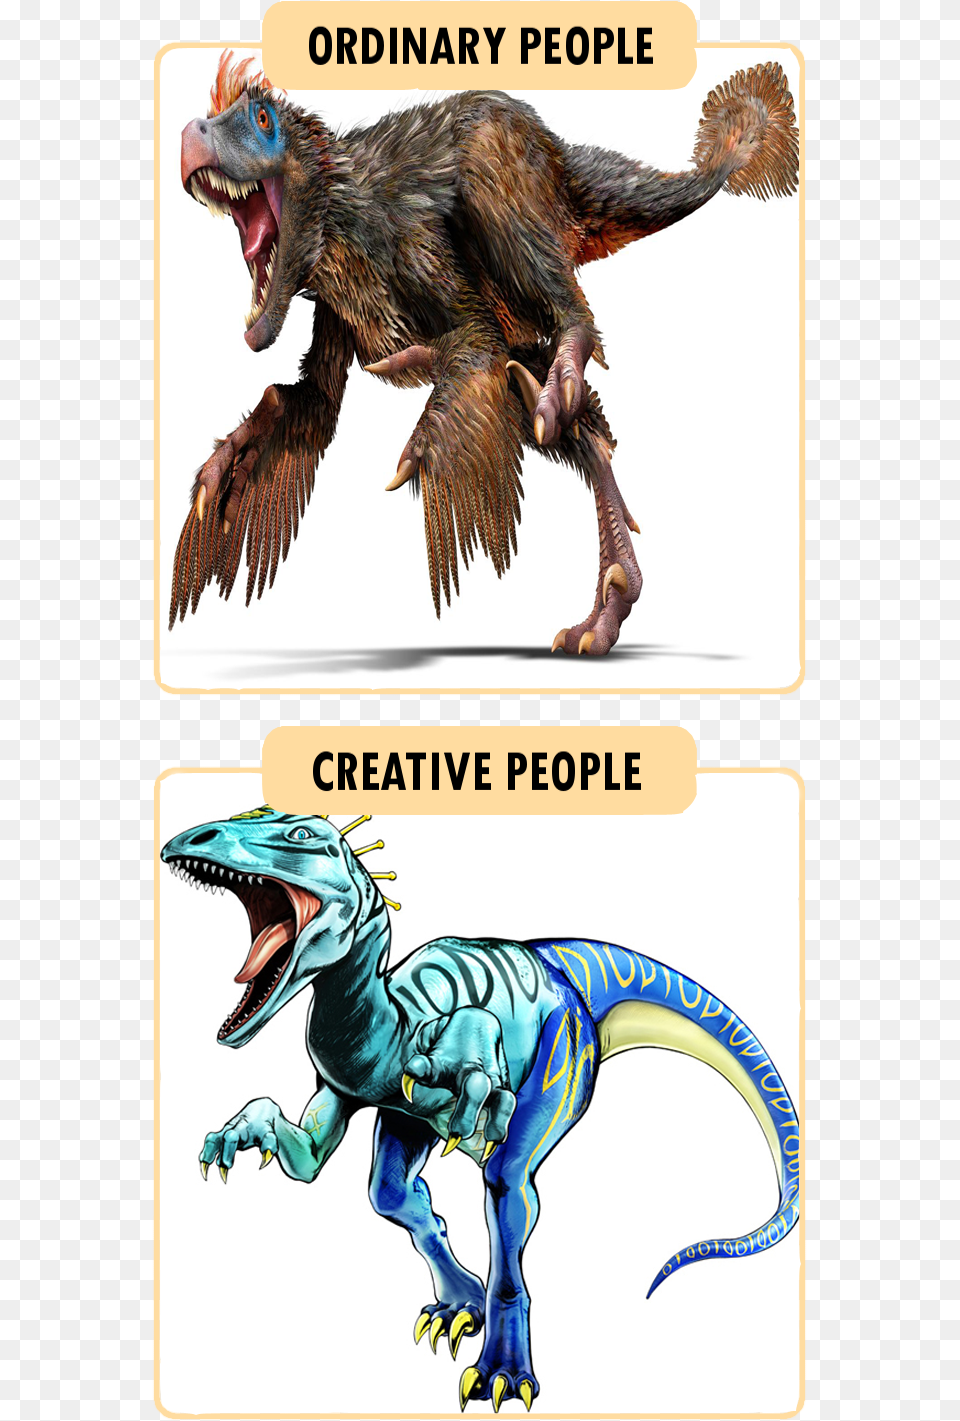 Ordinary People Creative People Jojo S Bizarre Adventure Scary Monsters Jojo, Animal, Dinosaur, Reptile, Bird Png Image